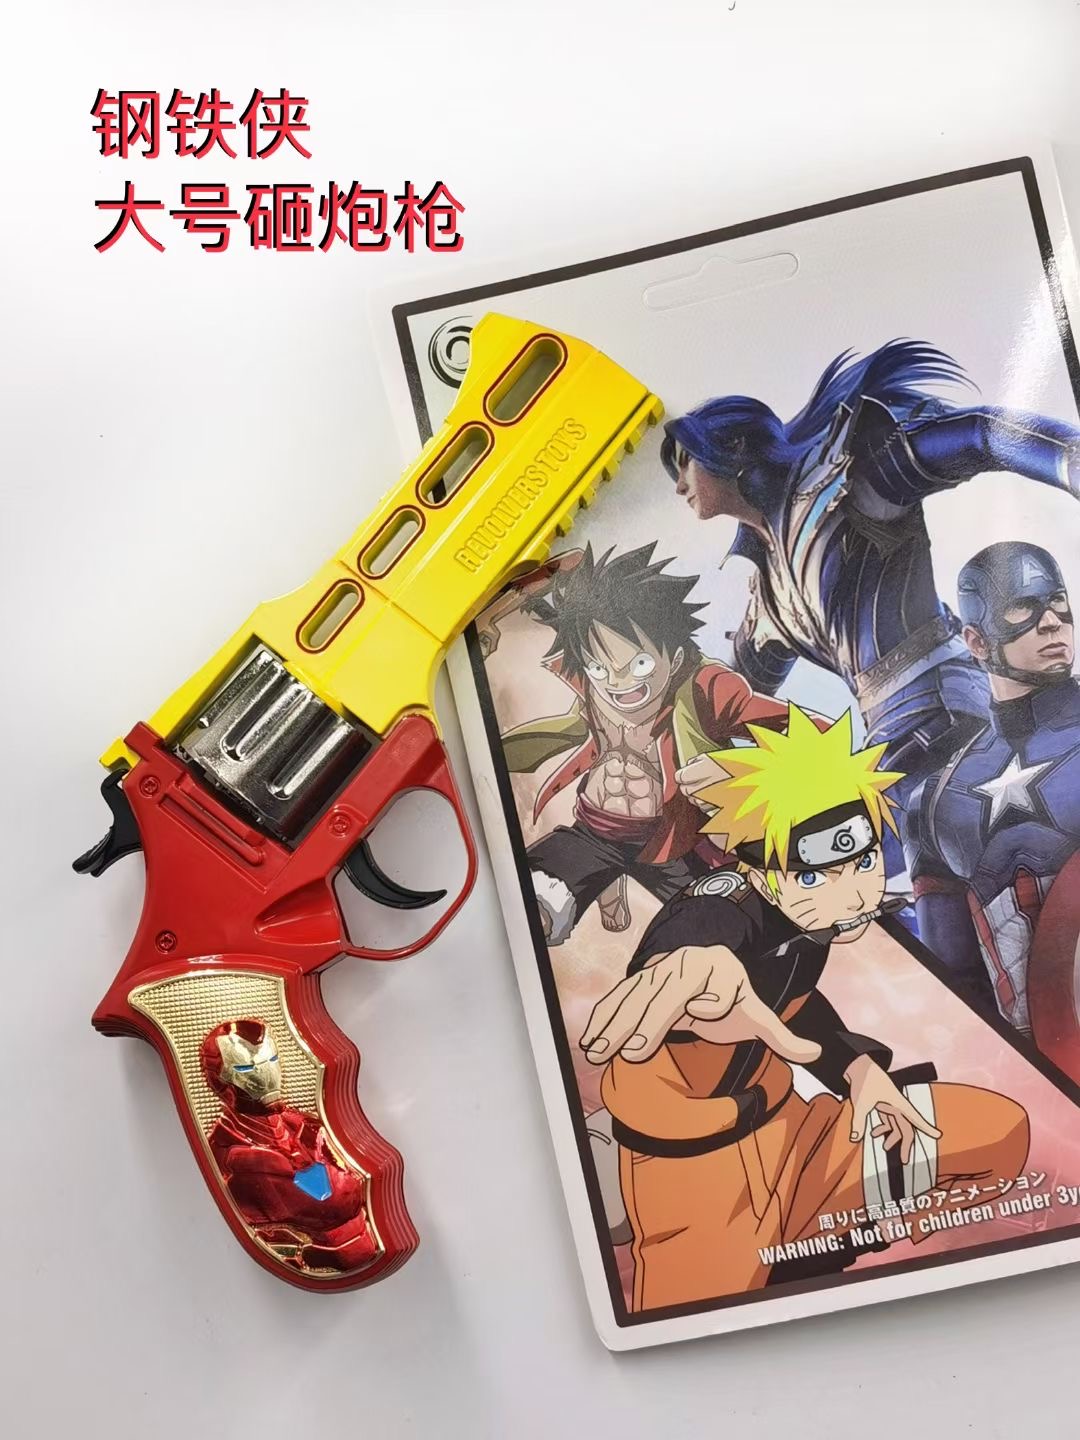 Iron Man anime gun smashing toy